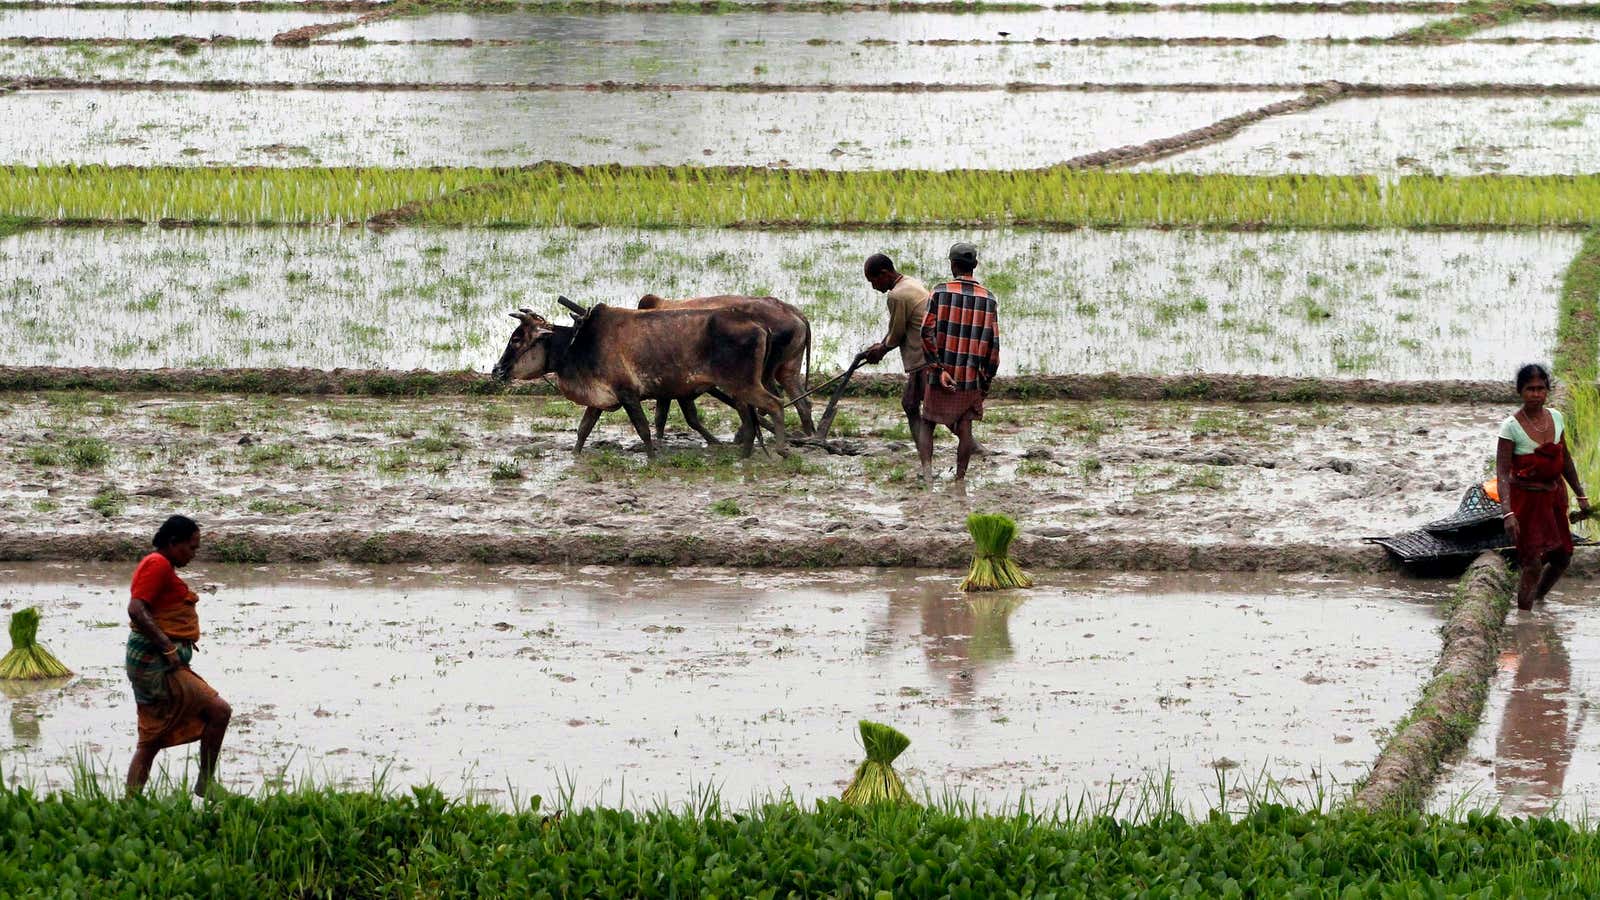 India has neglected its rain-fed farms.